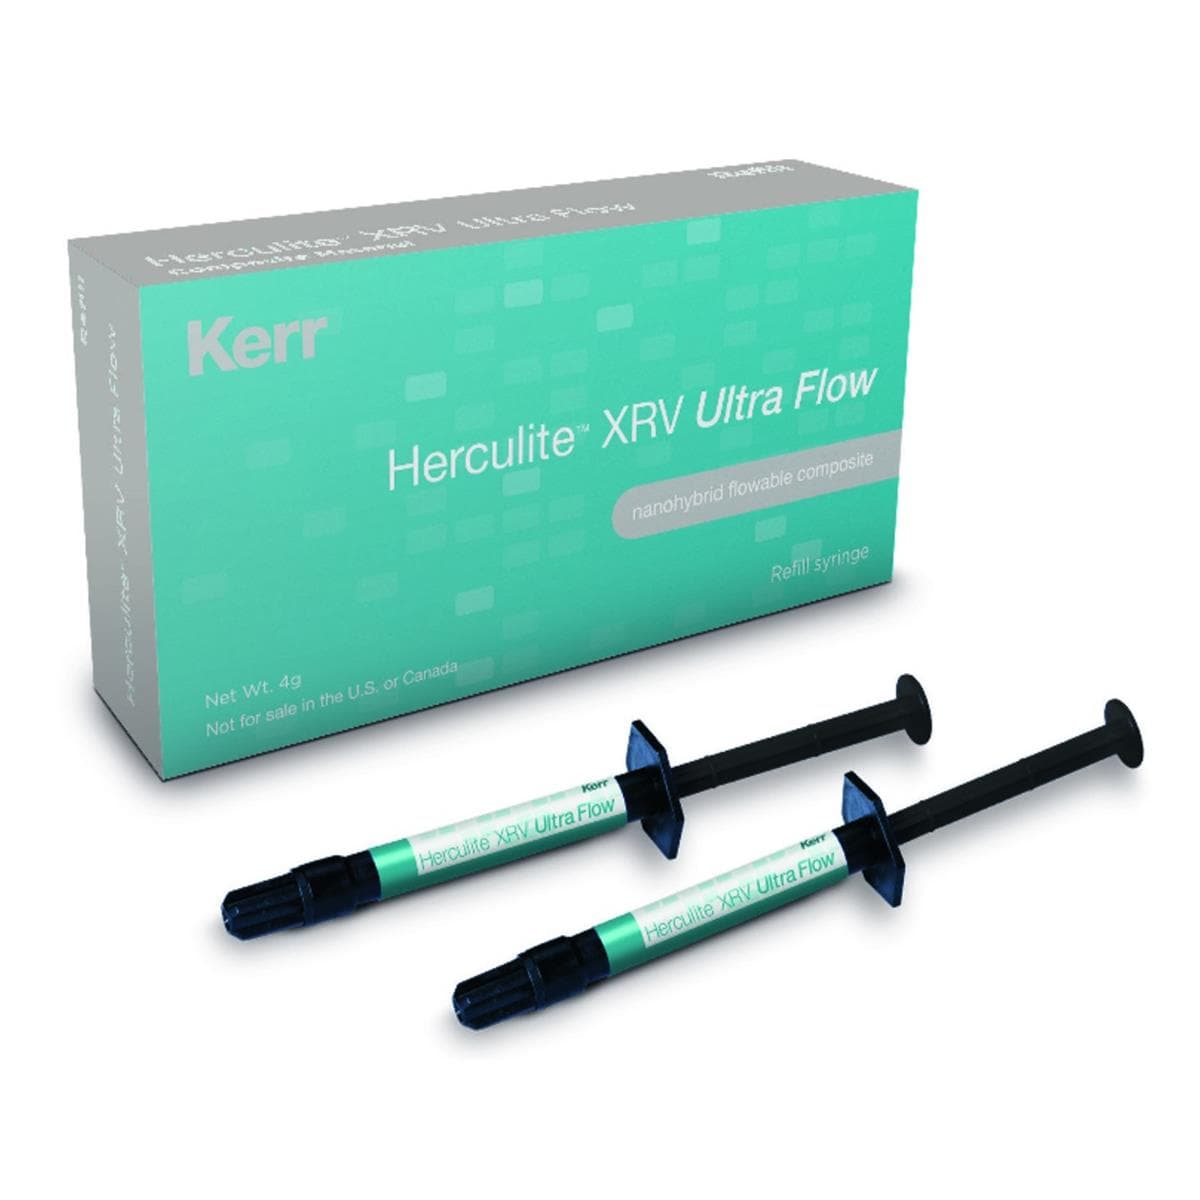 Herculite XRV Ultra Flow KERR - A3 - Seringue de 2g - Bote de 2